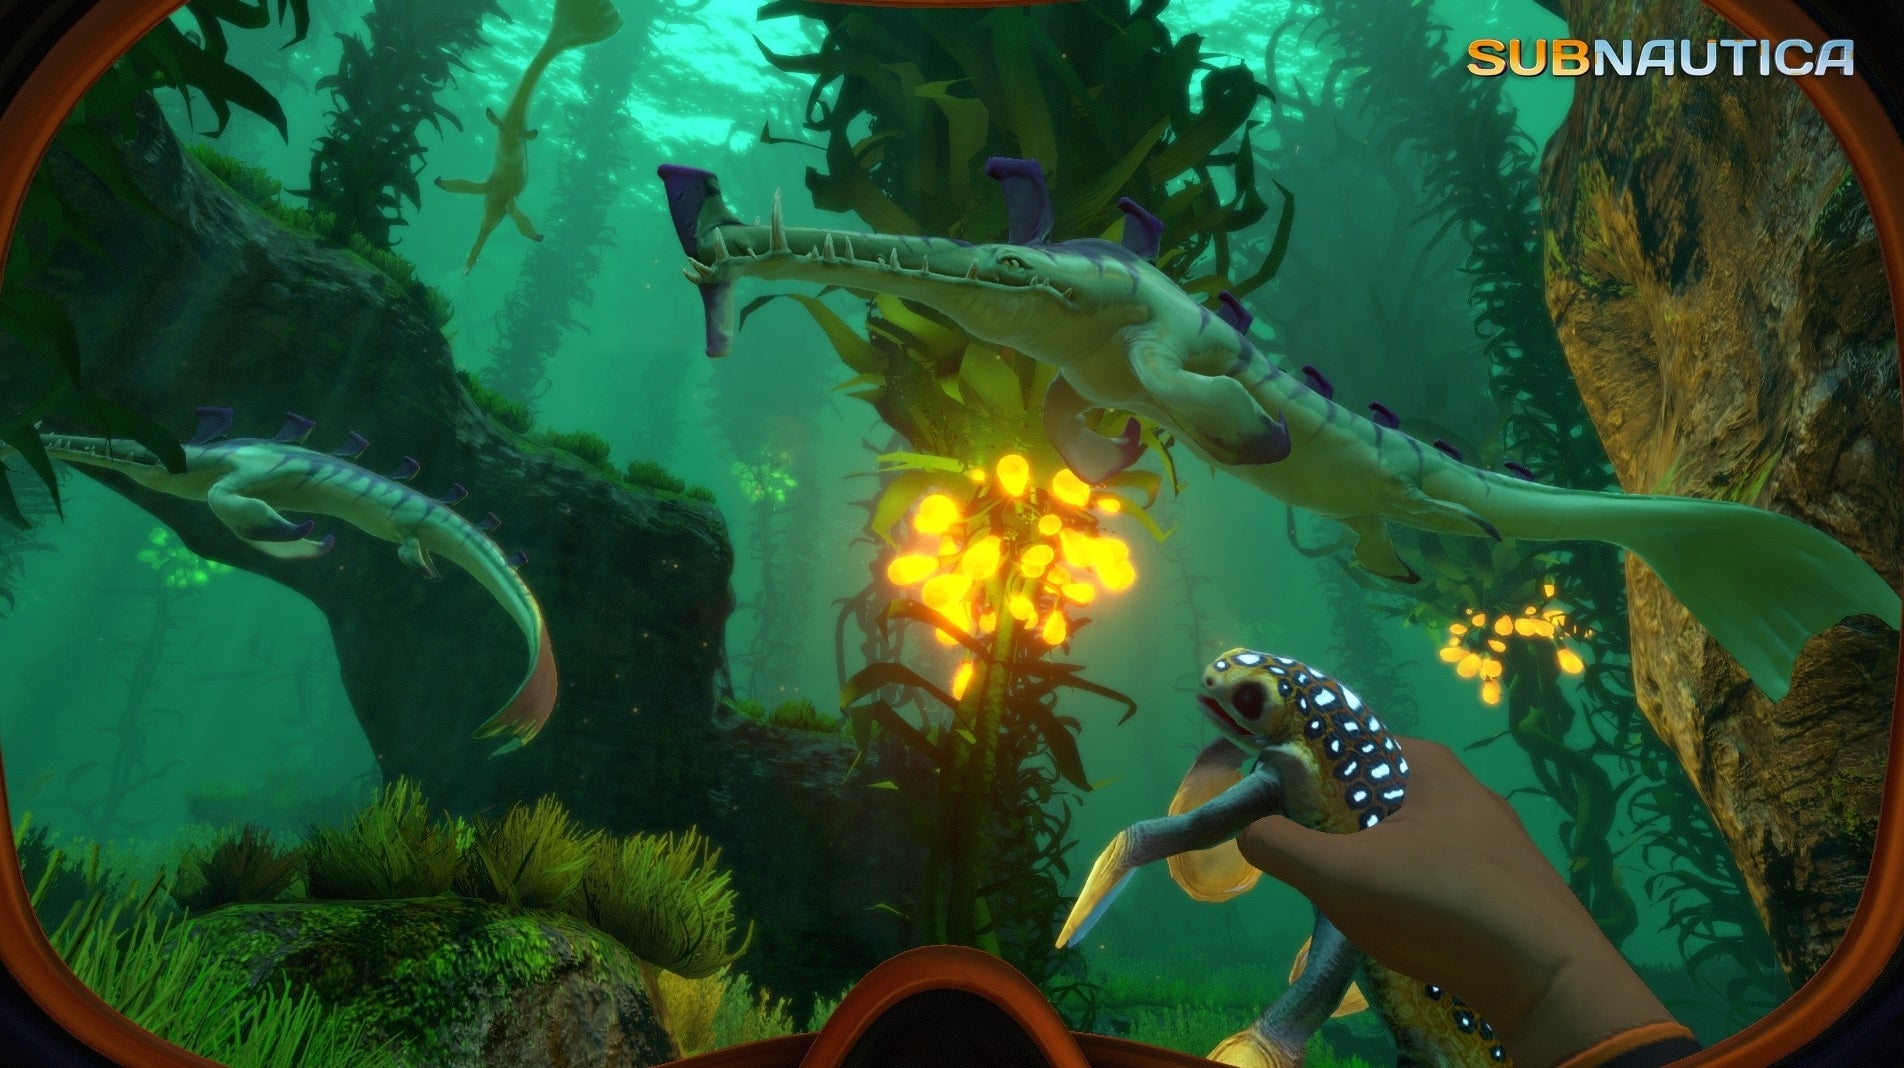 Immagine di Subnautica: l'open world subacqueo ha venduto oltre 5 milioni di copie